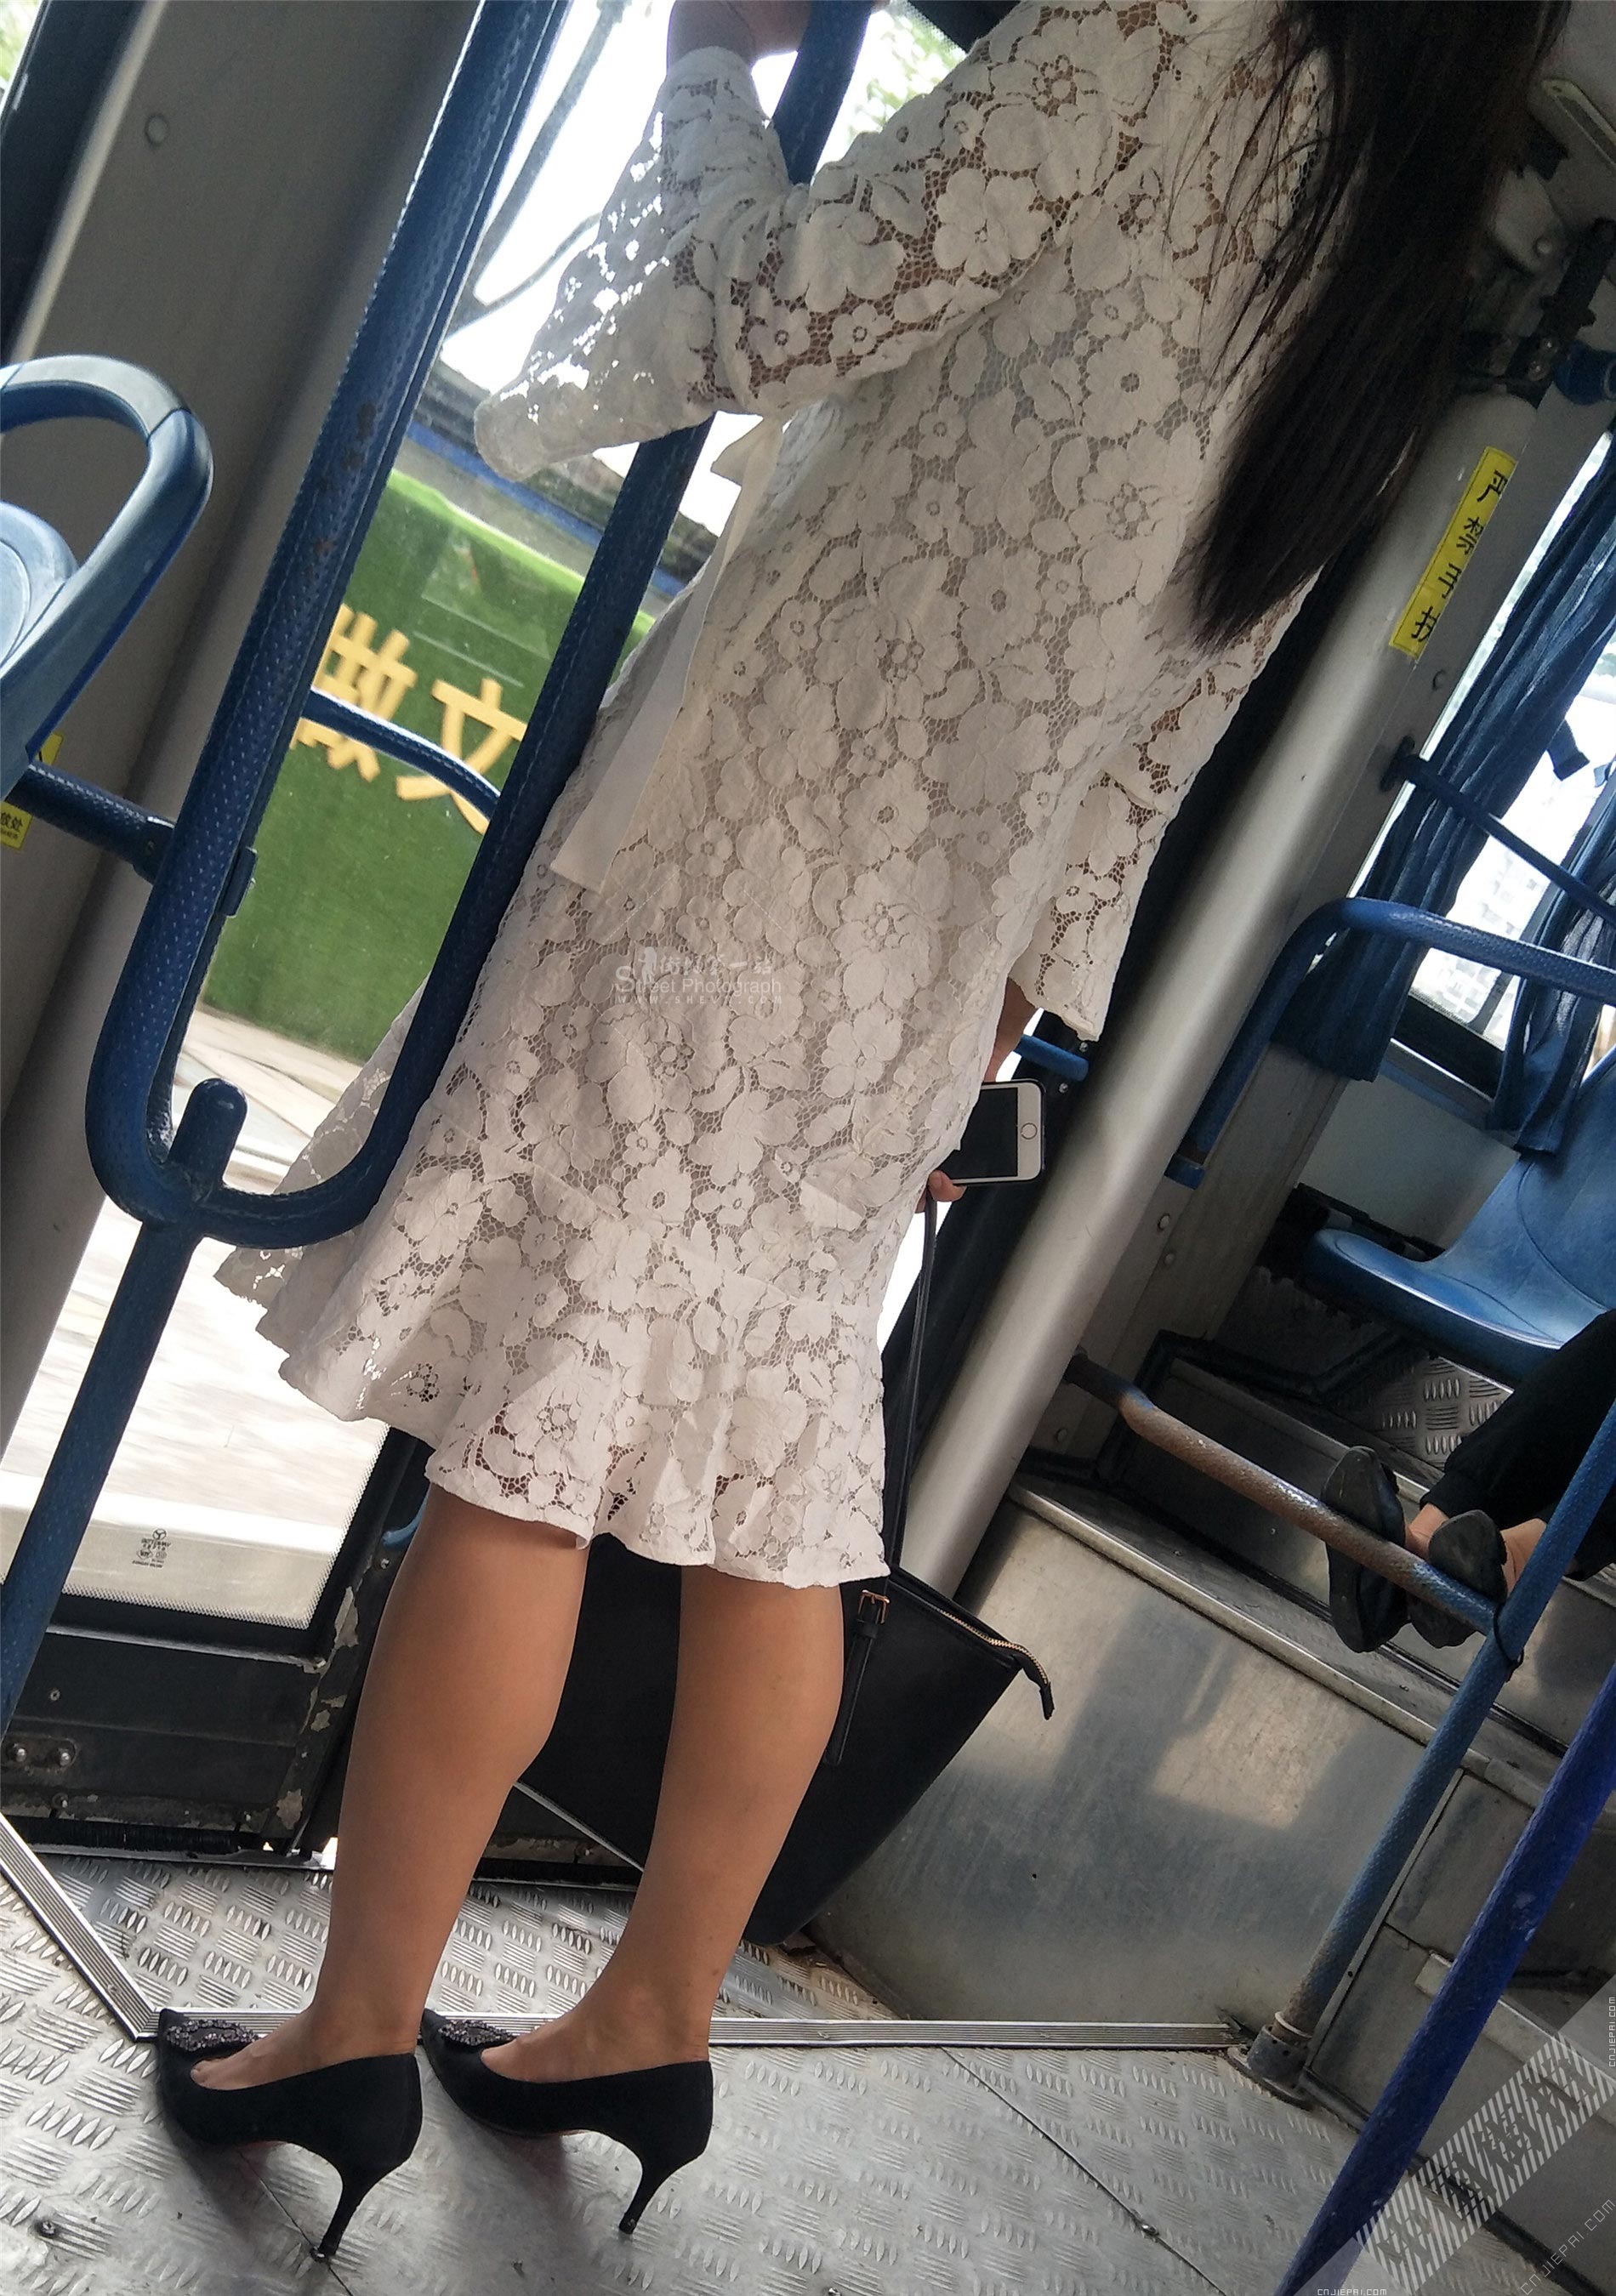 公交车蕾丝连衣裙长发高跟美少妇 图9